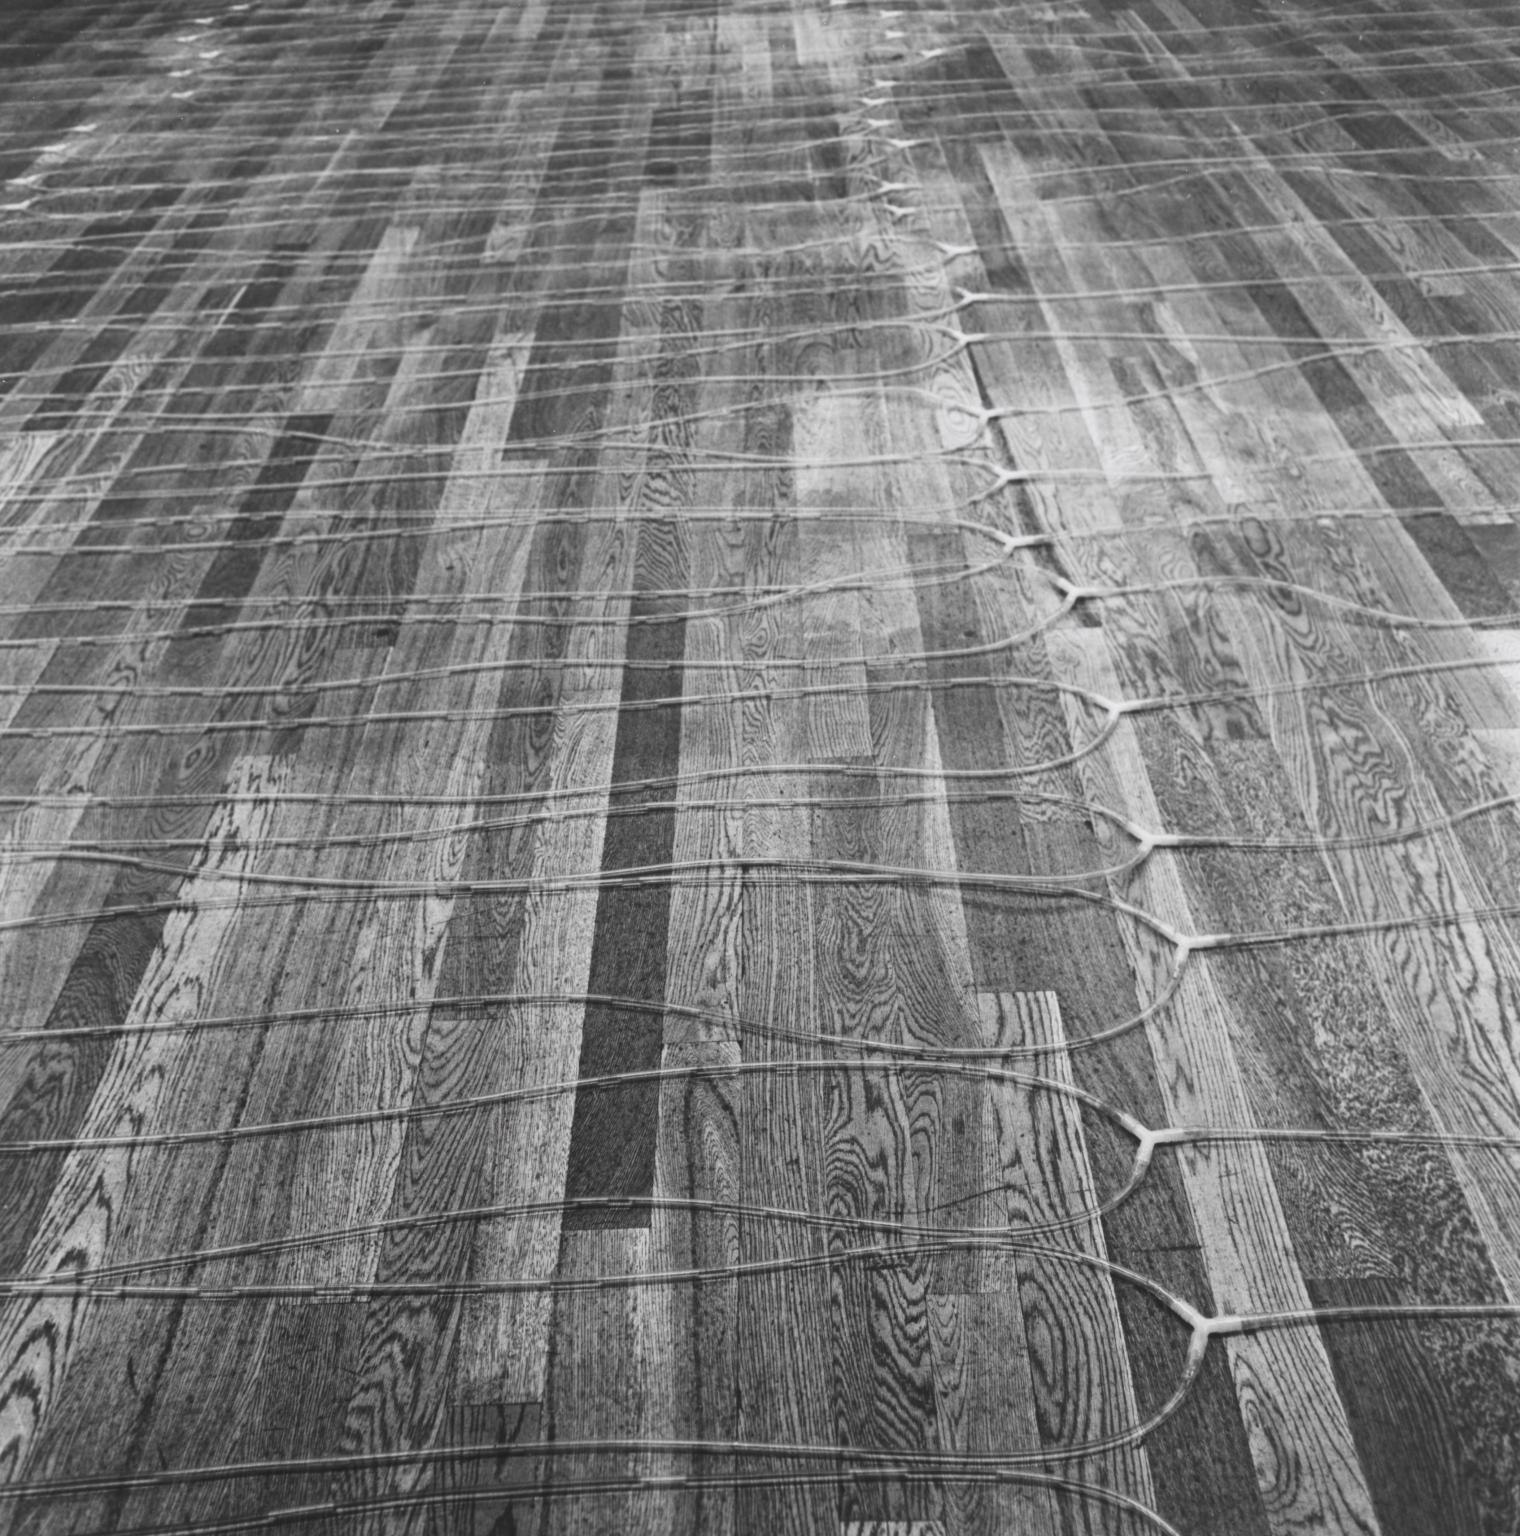 P14407: Hans Haacke, The 10th Tokyo Biennale ‘70 - Between Man and Matter